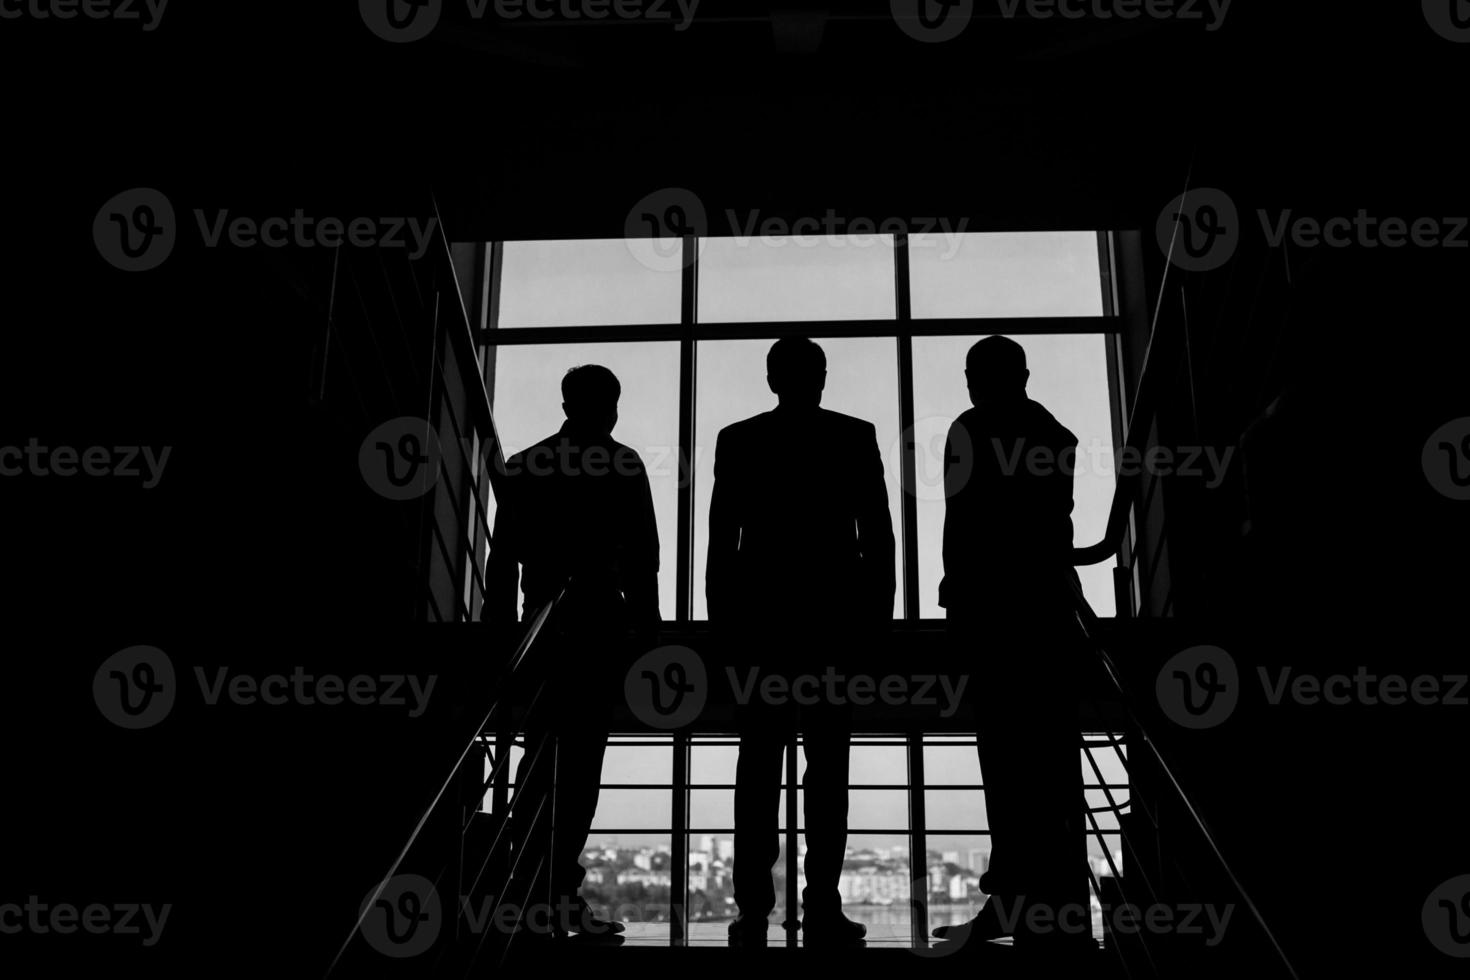 três empresários em pé na janela com vista para a cidade foto